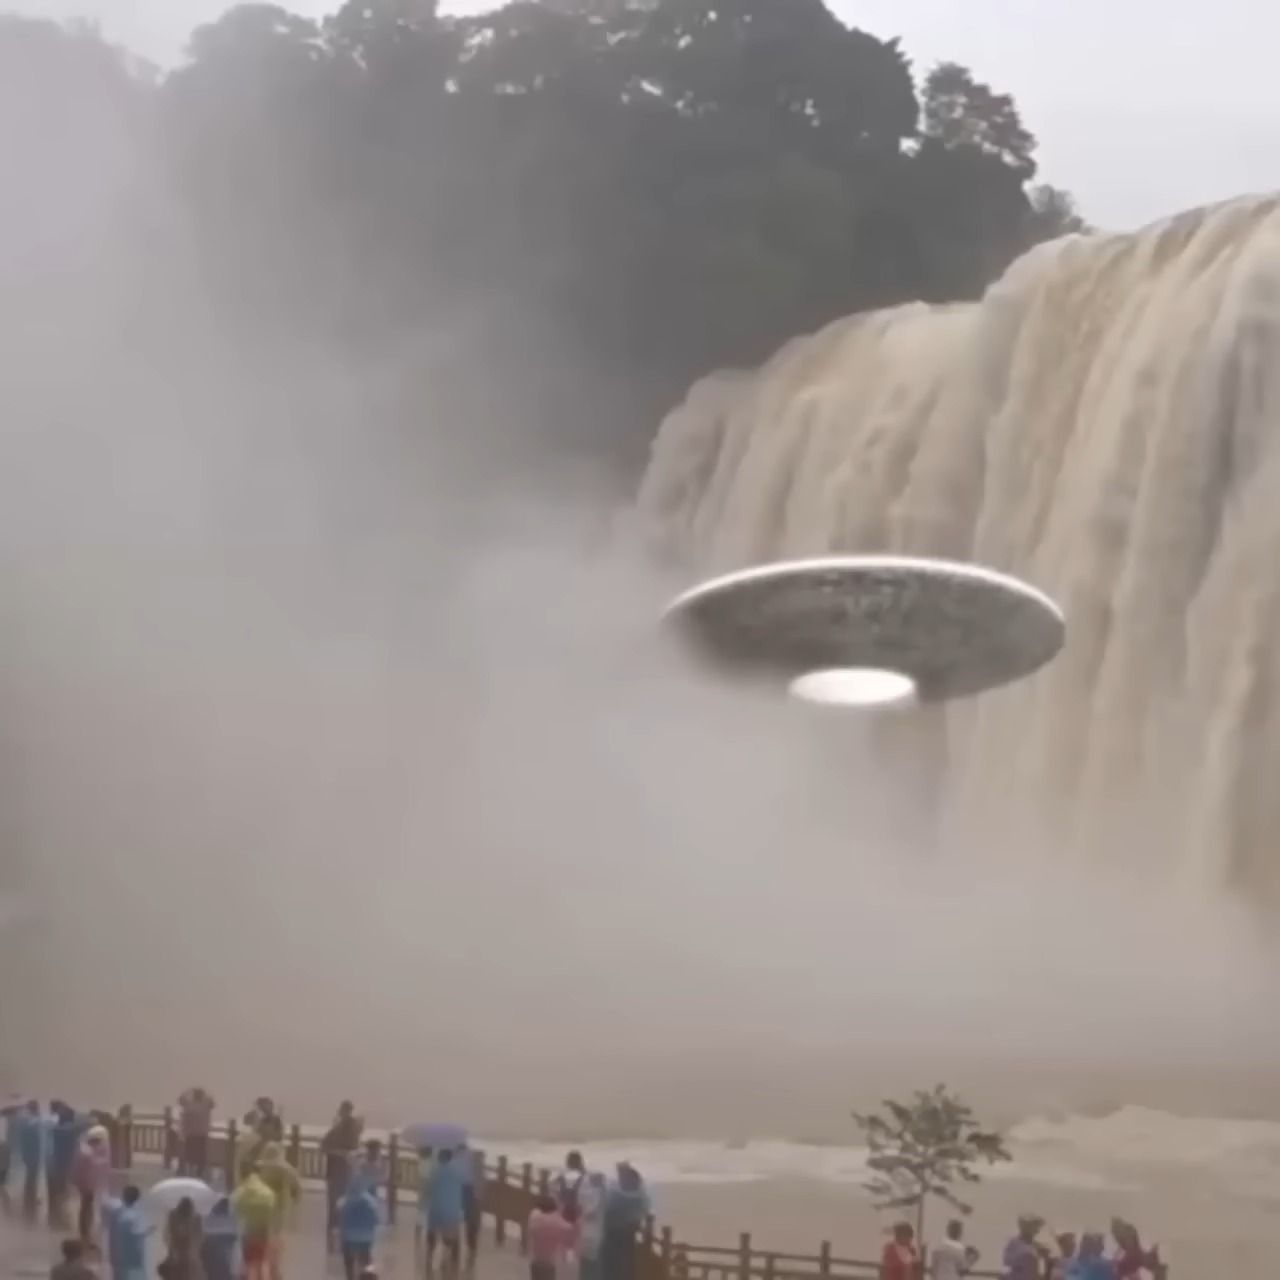 Astonished tourists Witness UFO(OVNI) Emerging from Waterfall, Unleashing Panic